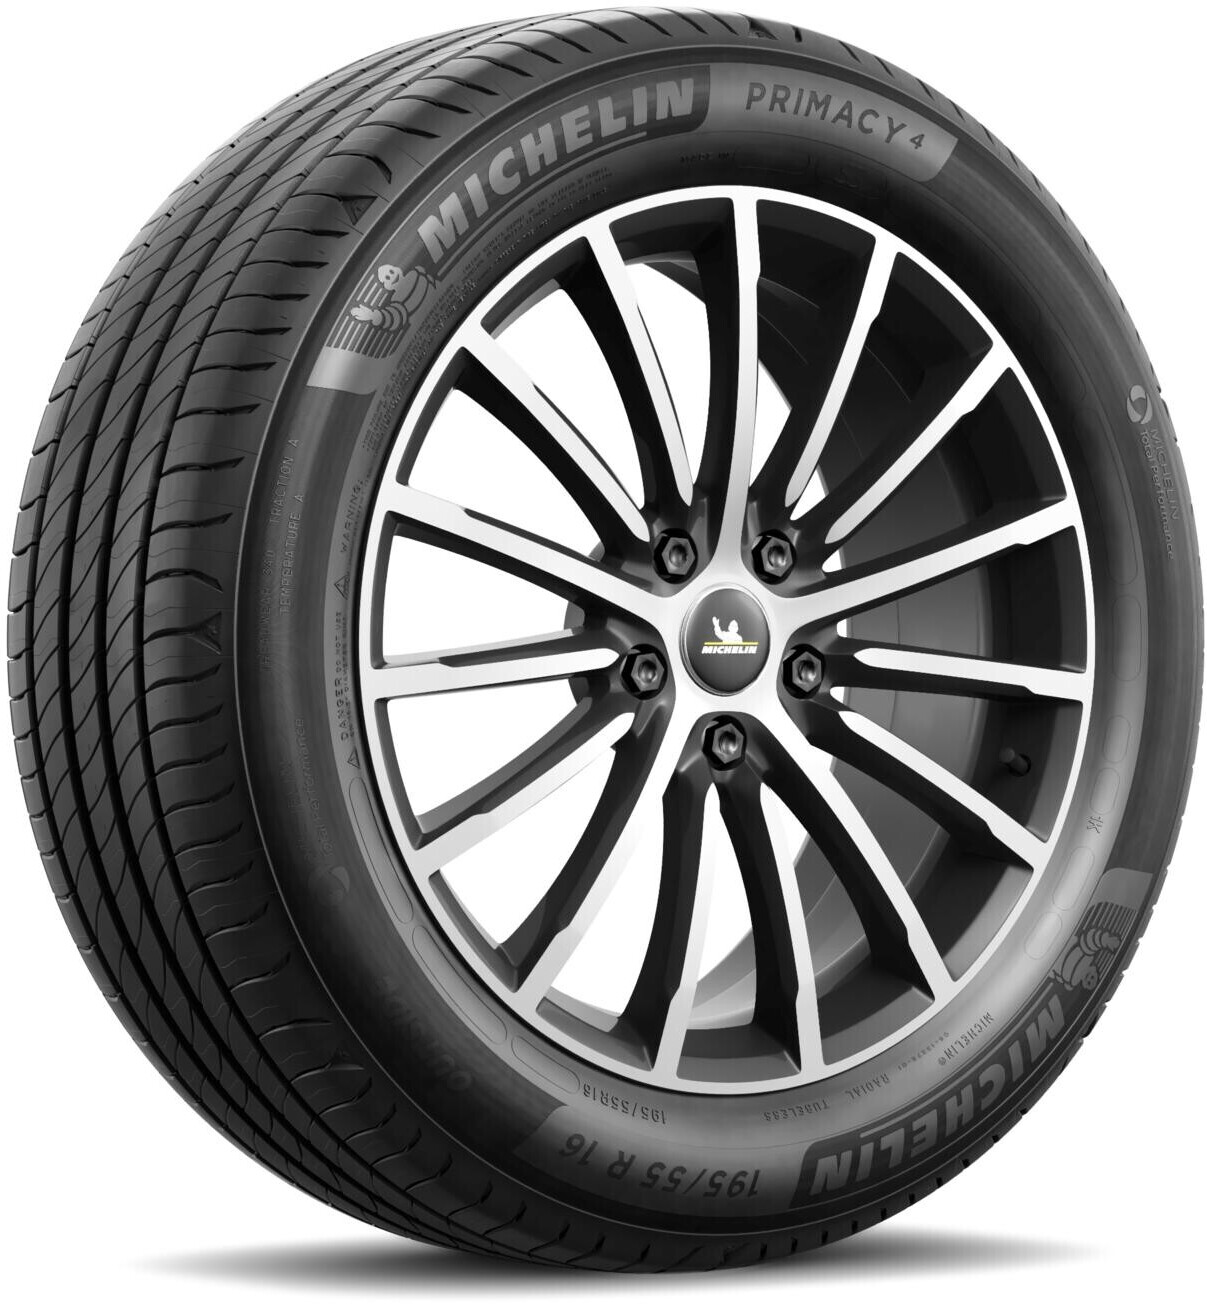 Michelin Primacy 4+ 195/55 R16 87V - Vendita pneumatici online per ogni  tipo di autoveicolo scopri oltre 40.000 di misur